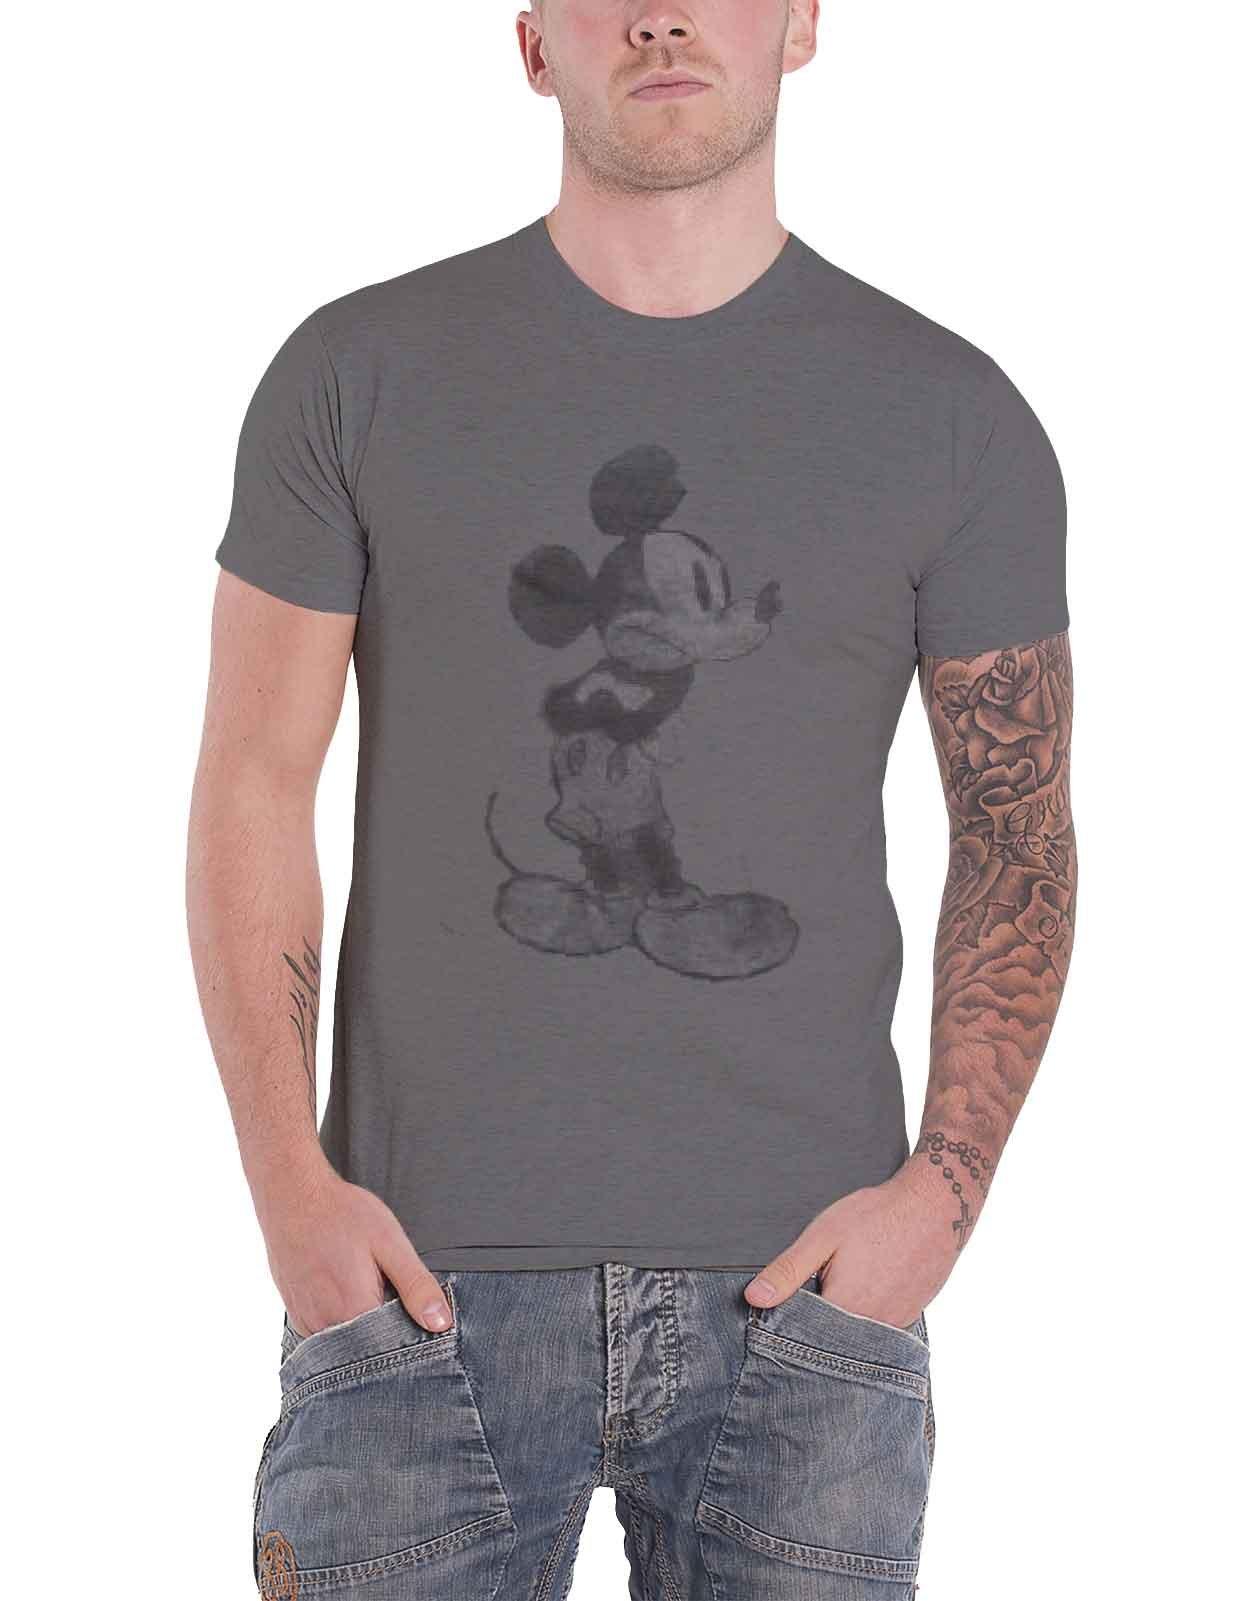 Винтажная футболка с изображением Микки Мауса Disney, серый фотографии